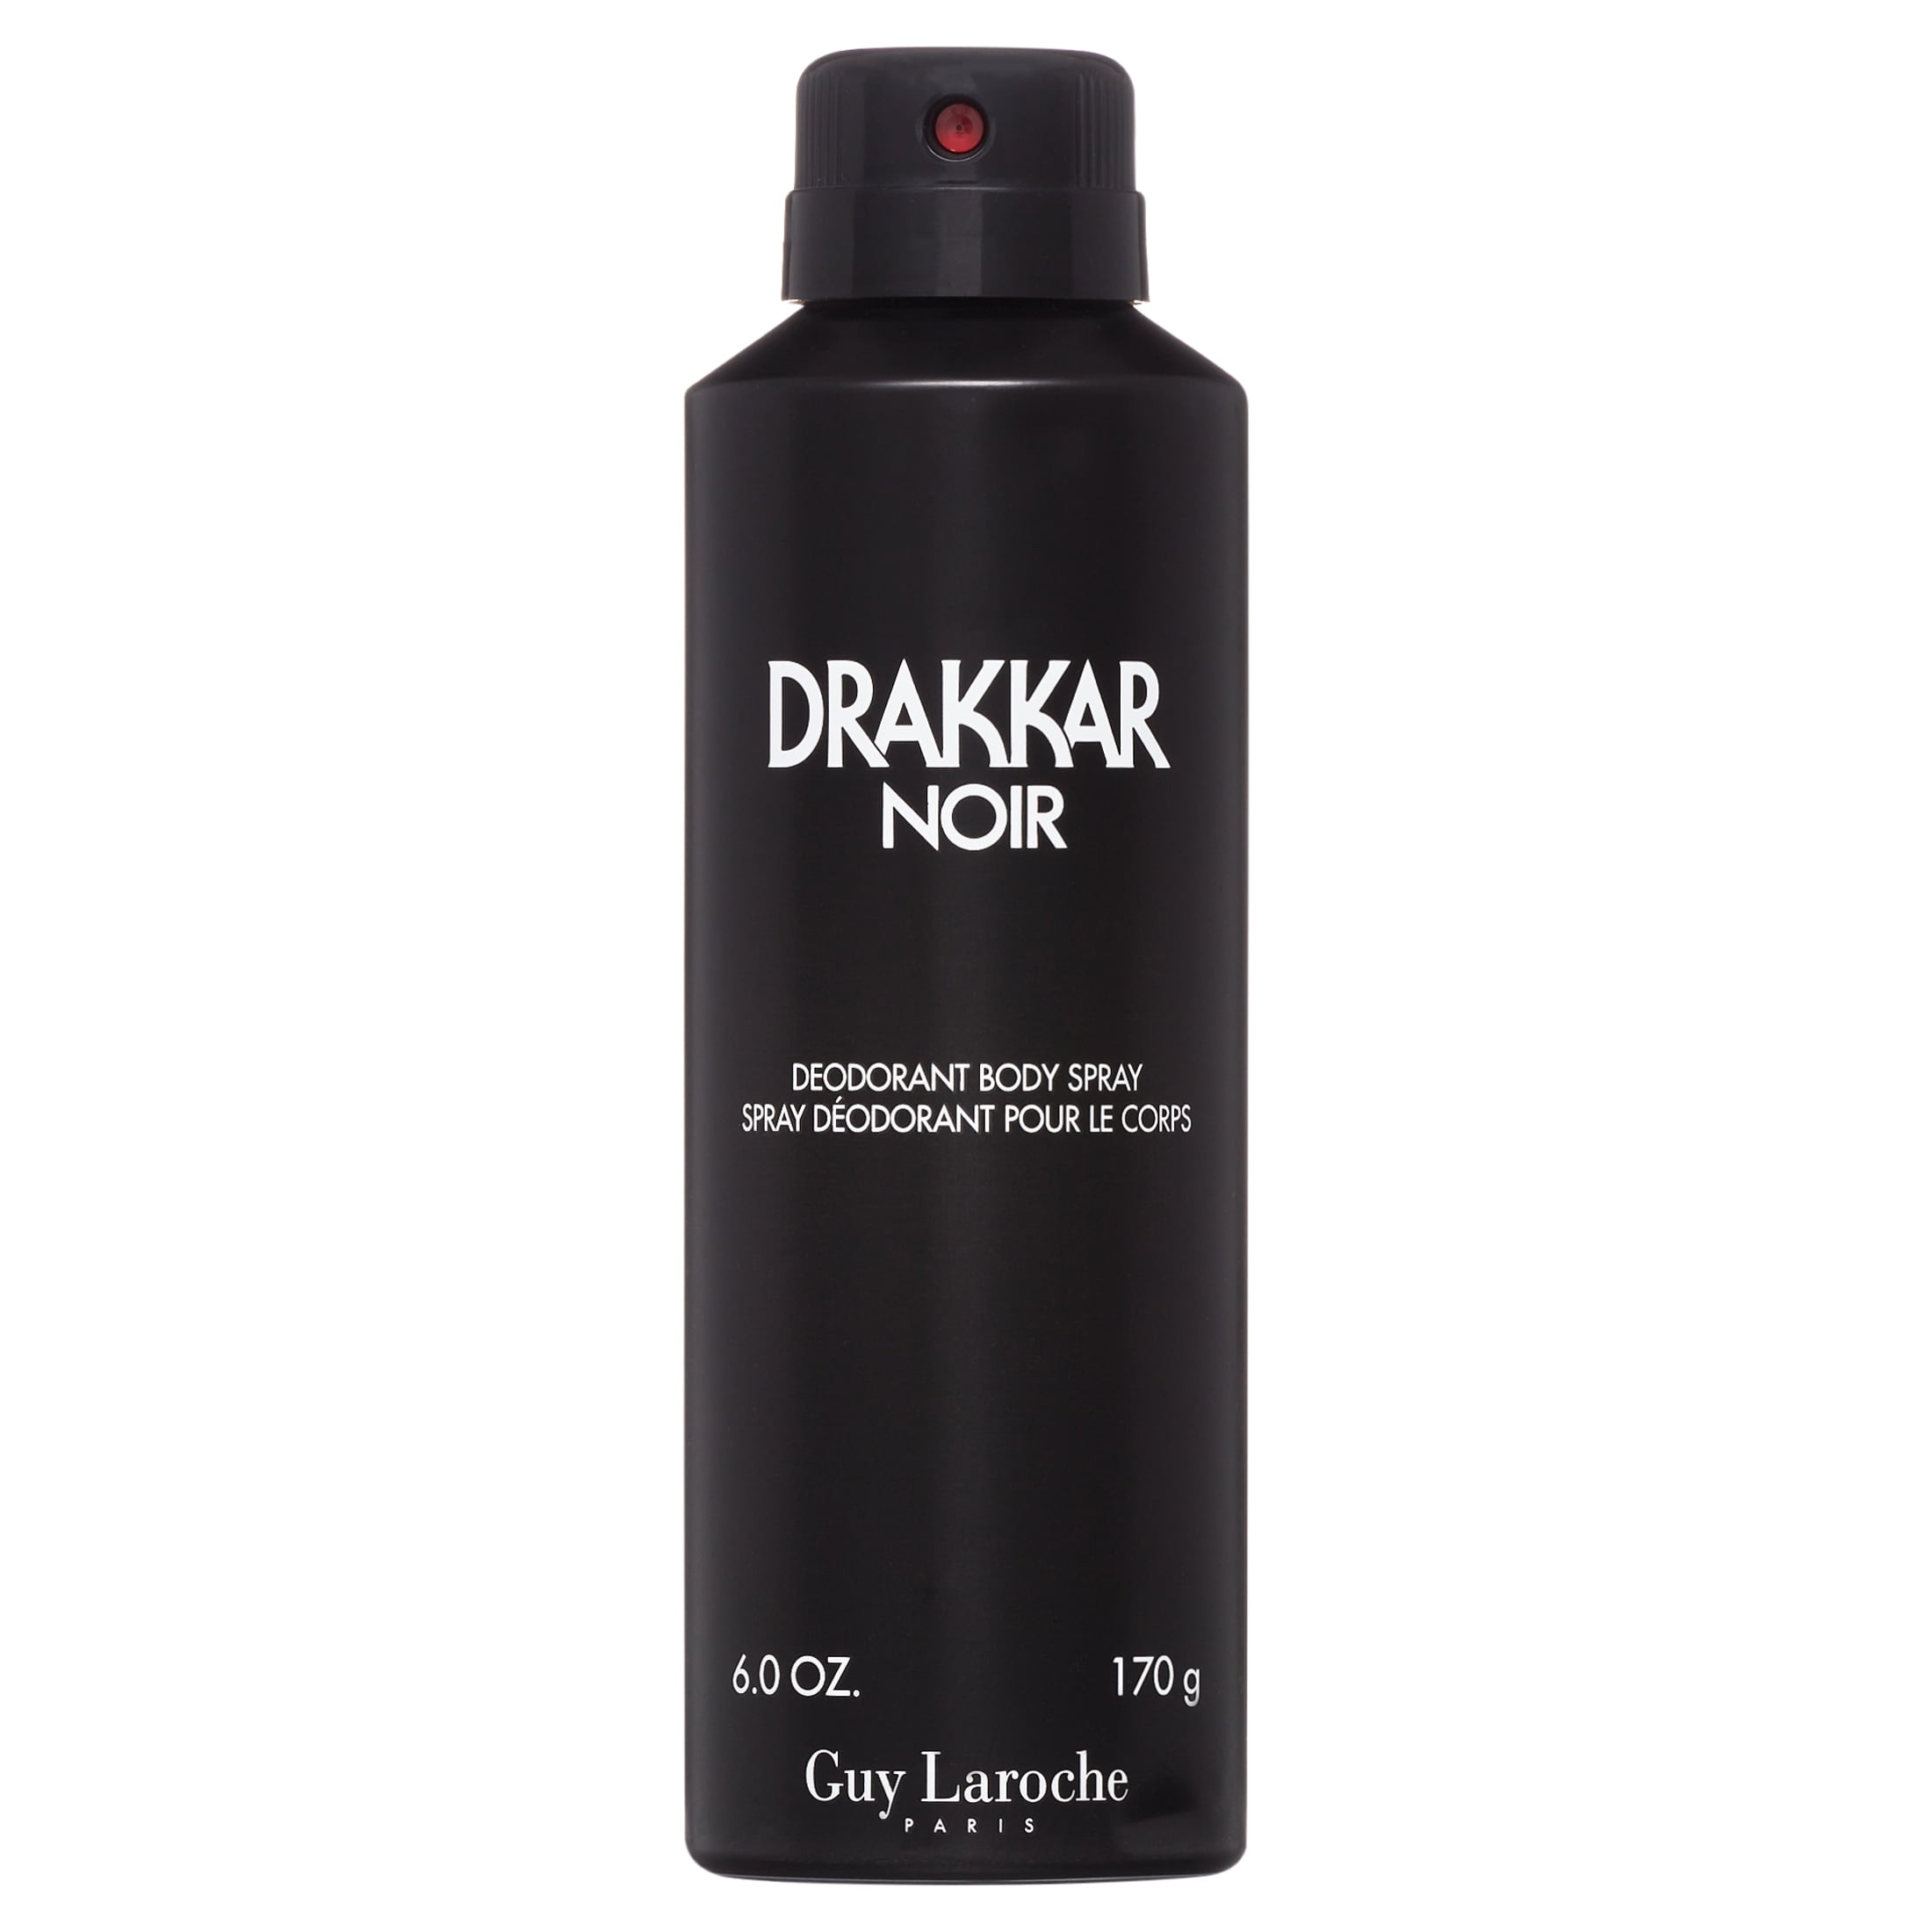 Guy Laroche Drakkar Noir Body Spray for Men, 6 Oz 